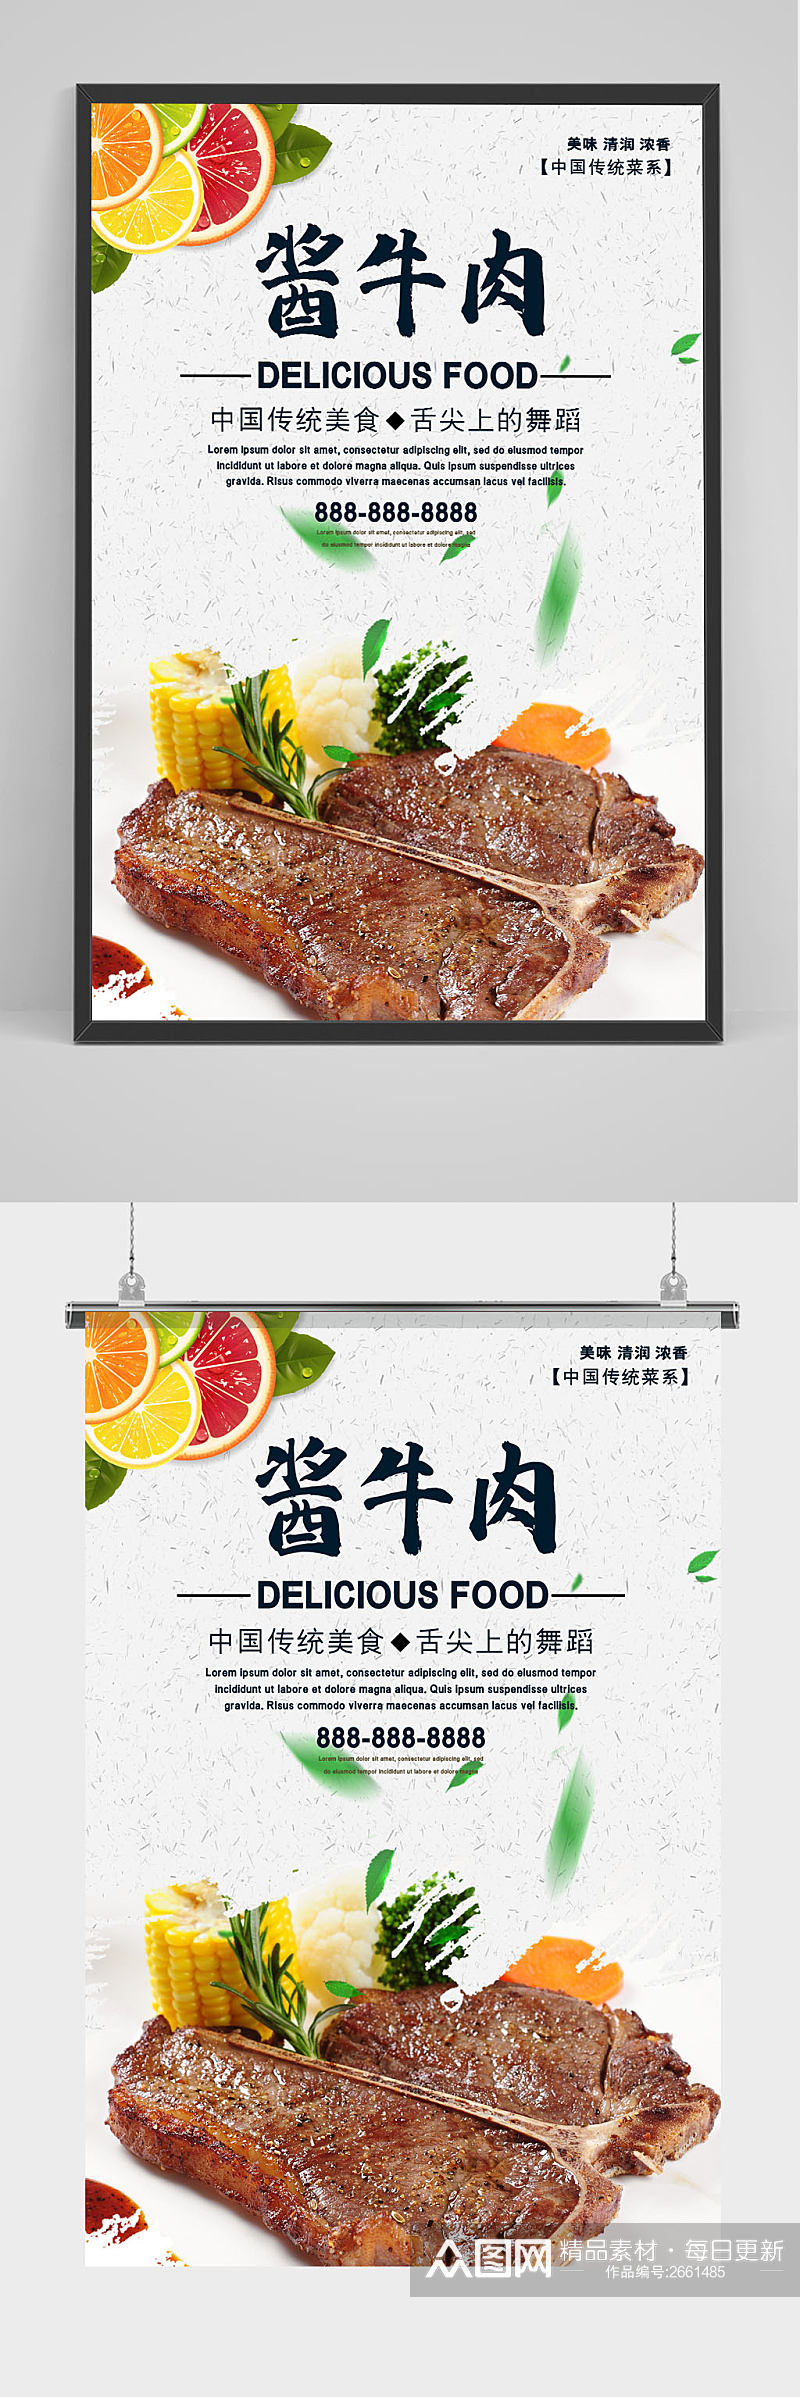 清新美味中国传统美食酱牛肉美食创意海报素材